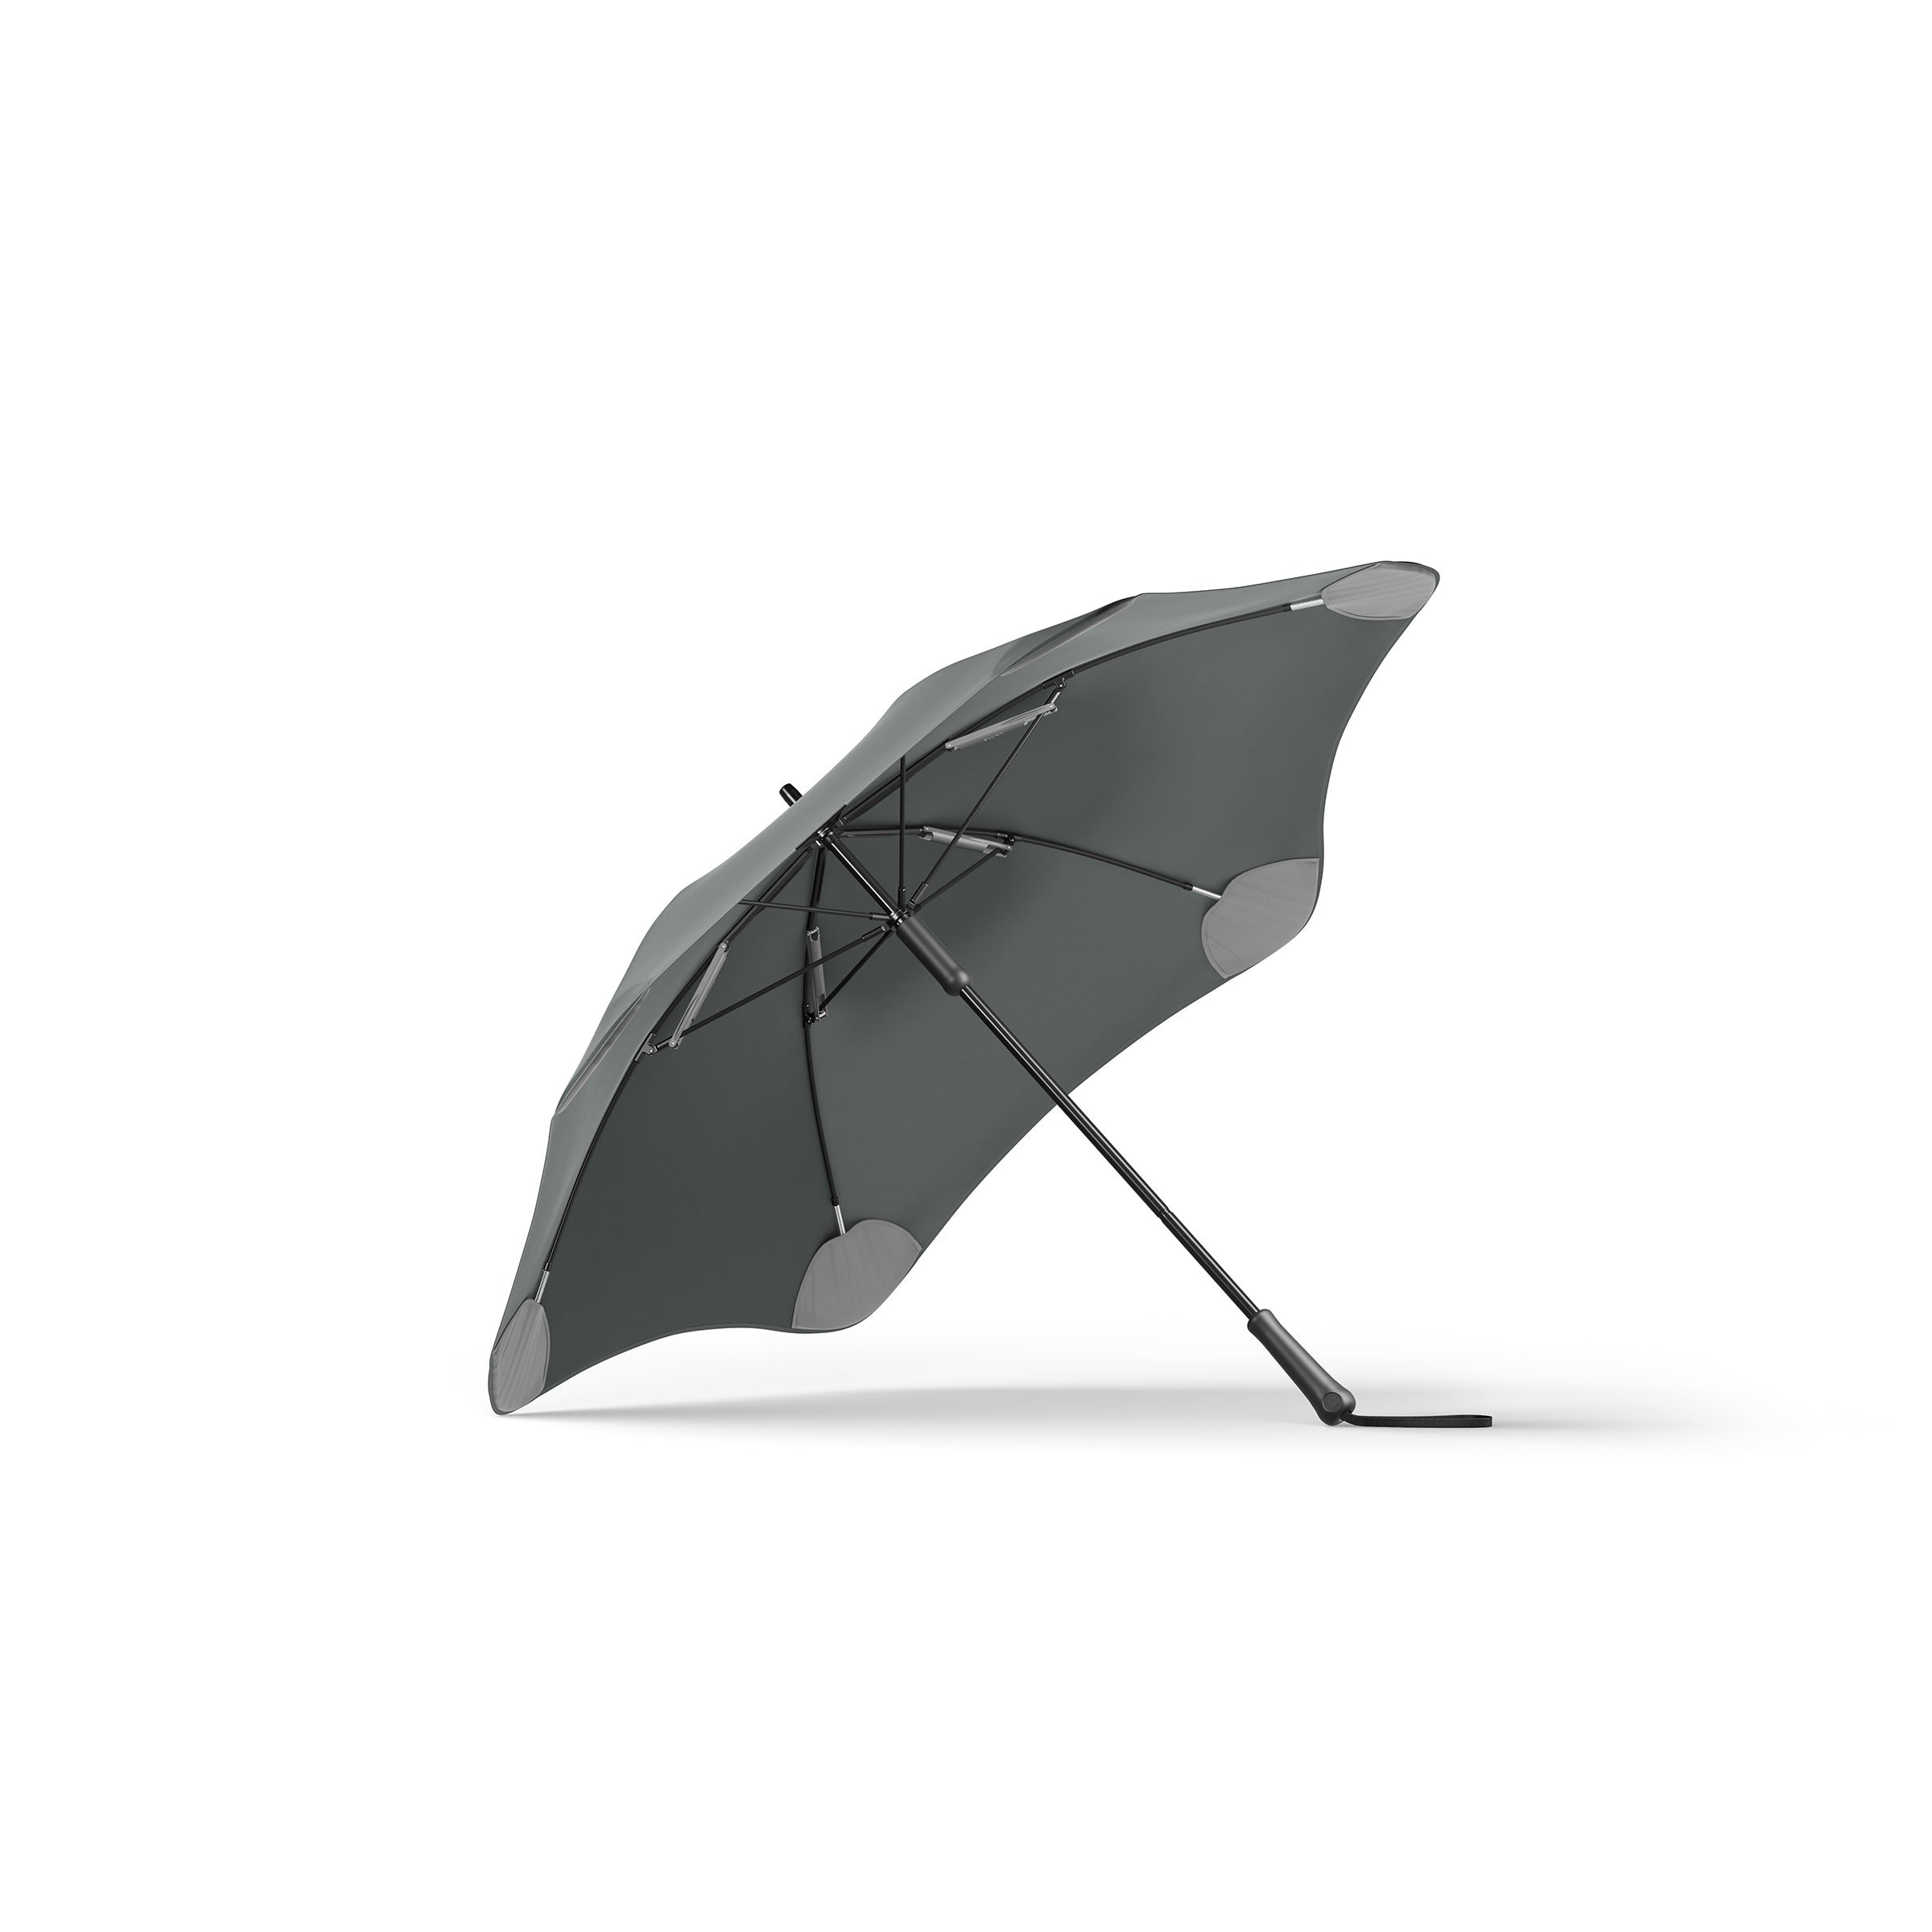 Charcoal Blunt Classic New Zealand Large Umbrella